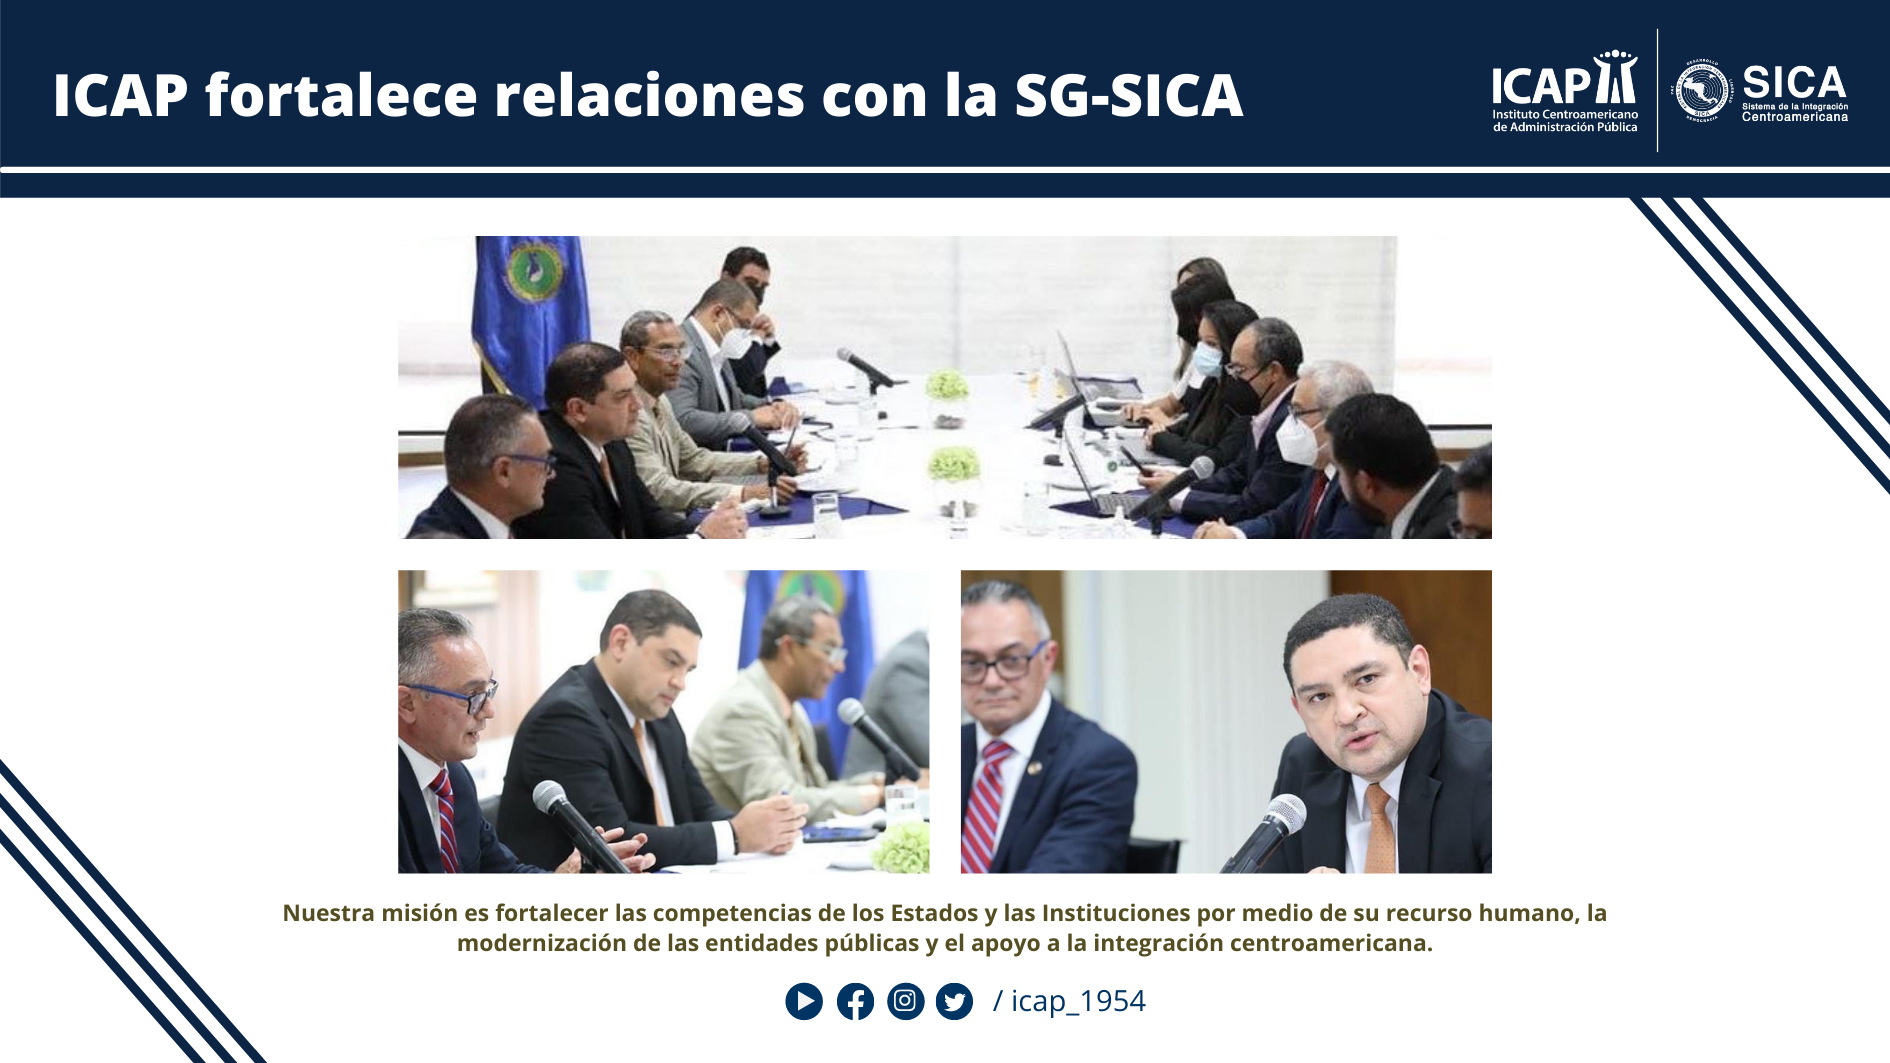 ICAP fortalece relaciones con la SG-SICA